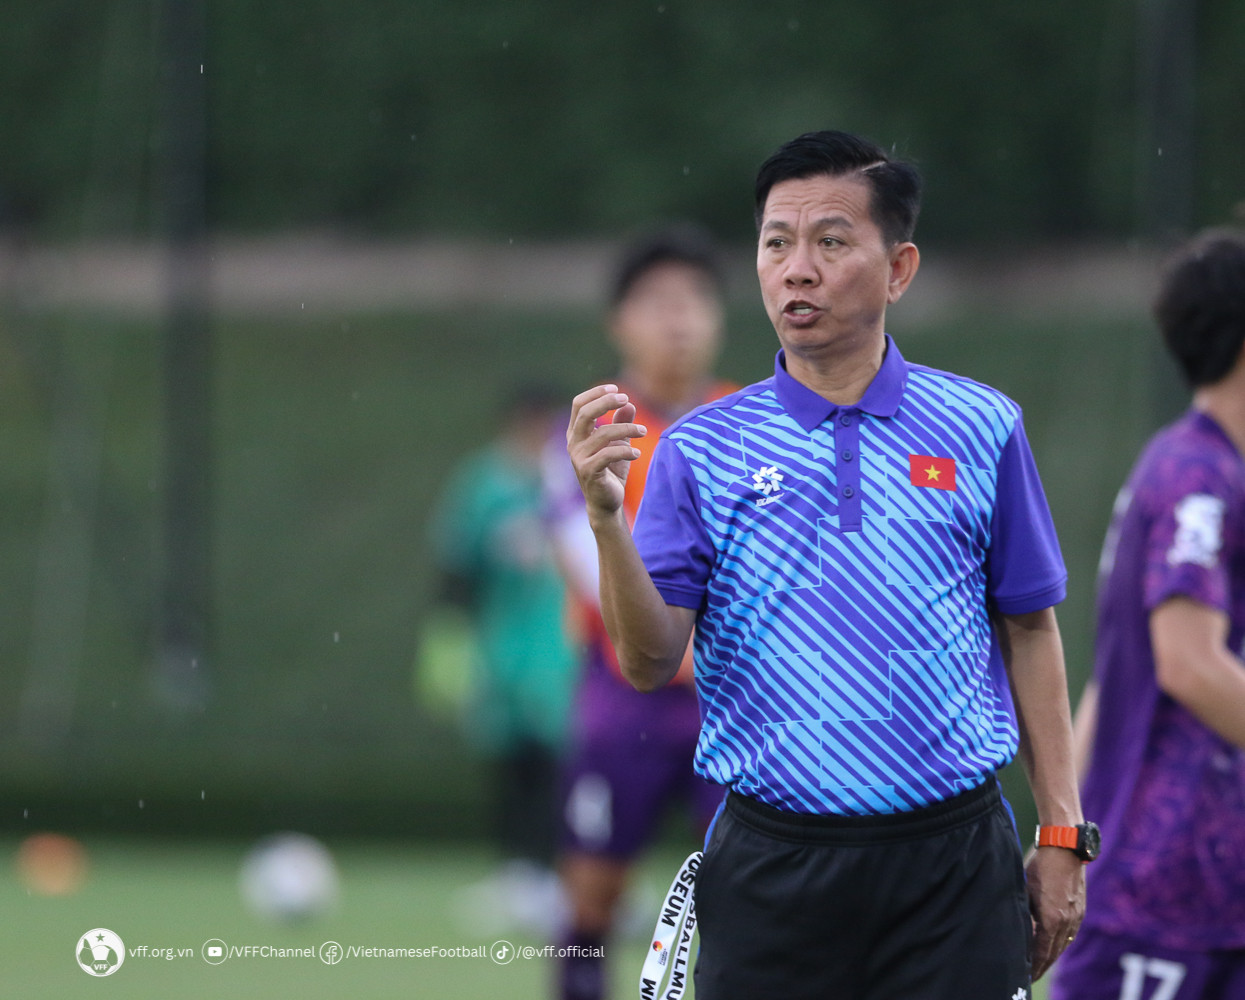 HLV Hoàng Anh Tuấn: ‘Các đối thủ của U23 Việt Nam đều rất mạnh’ - Ảnh 1